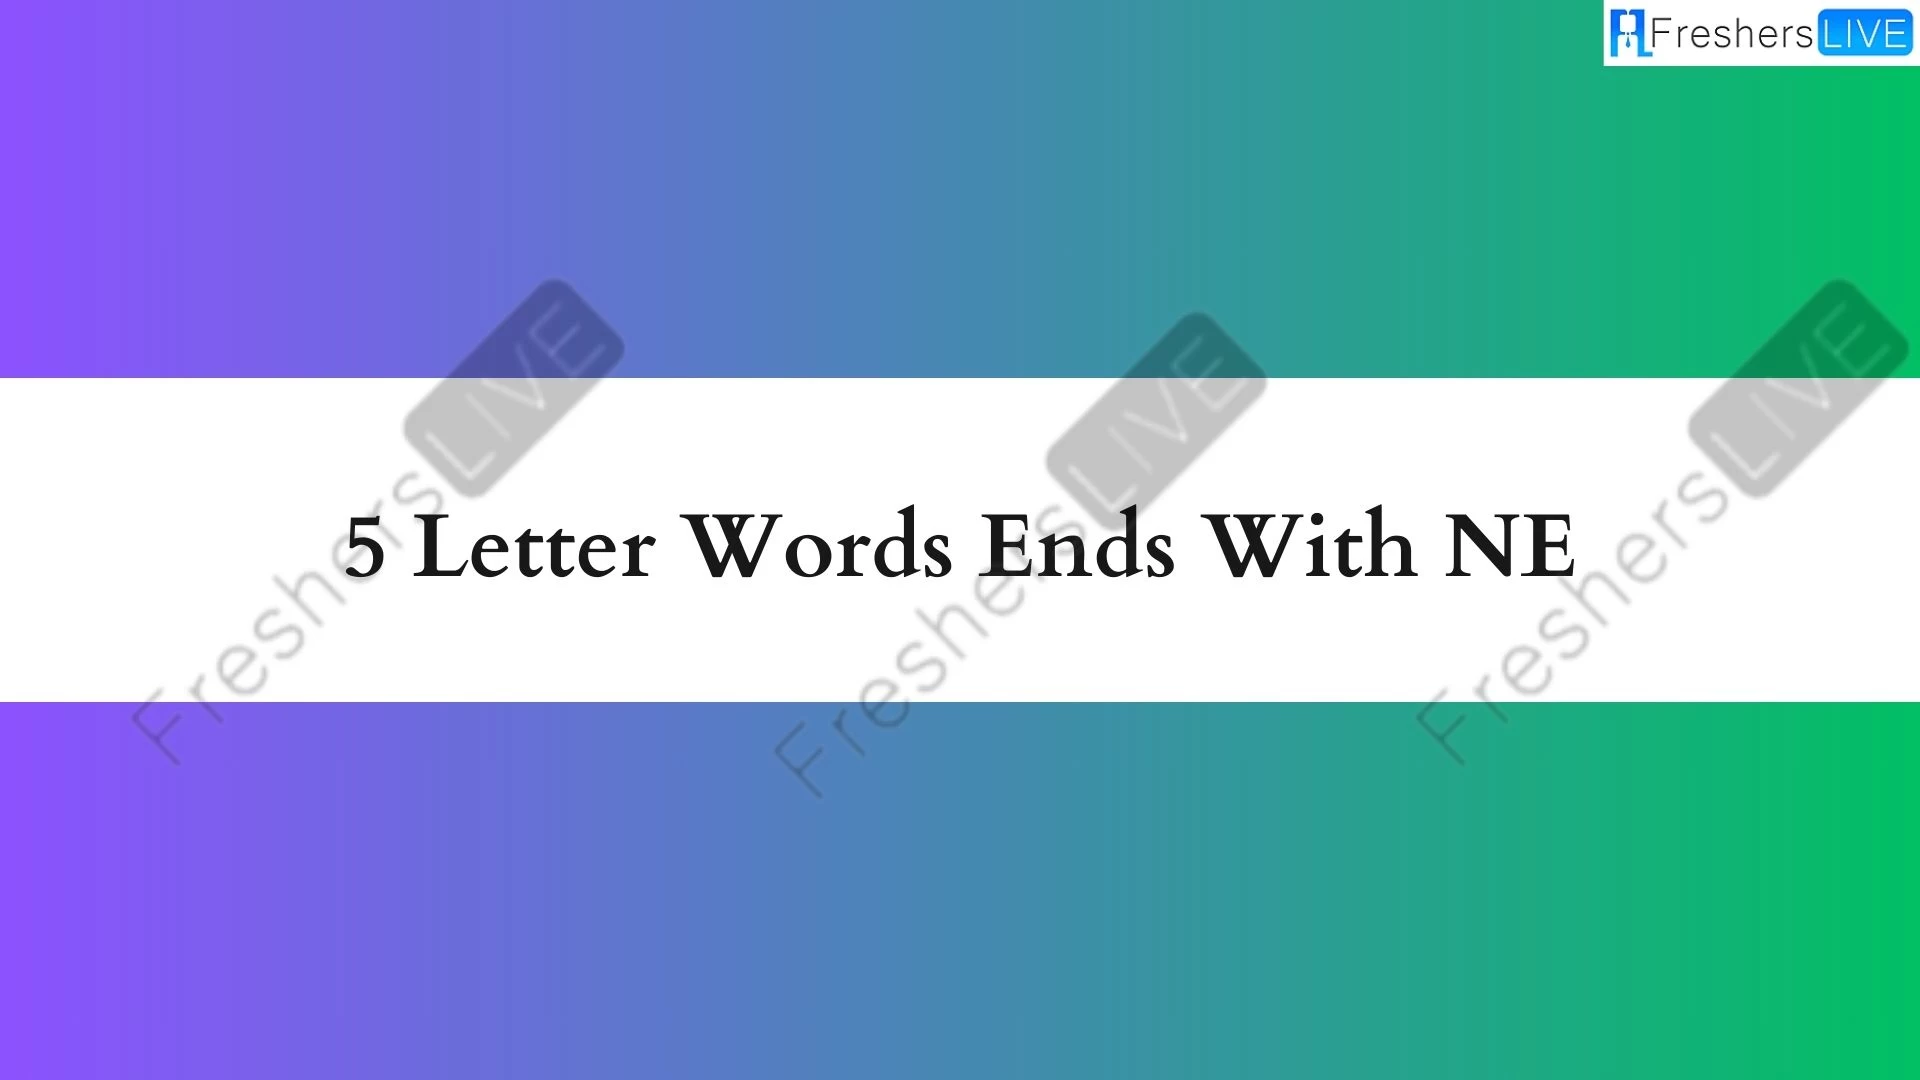 Palabras de 5 letras que terminen en NE, Lista de palabras de 5 letras que terminen en NE